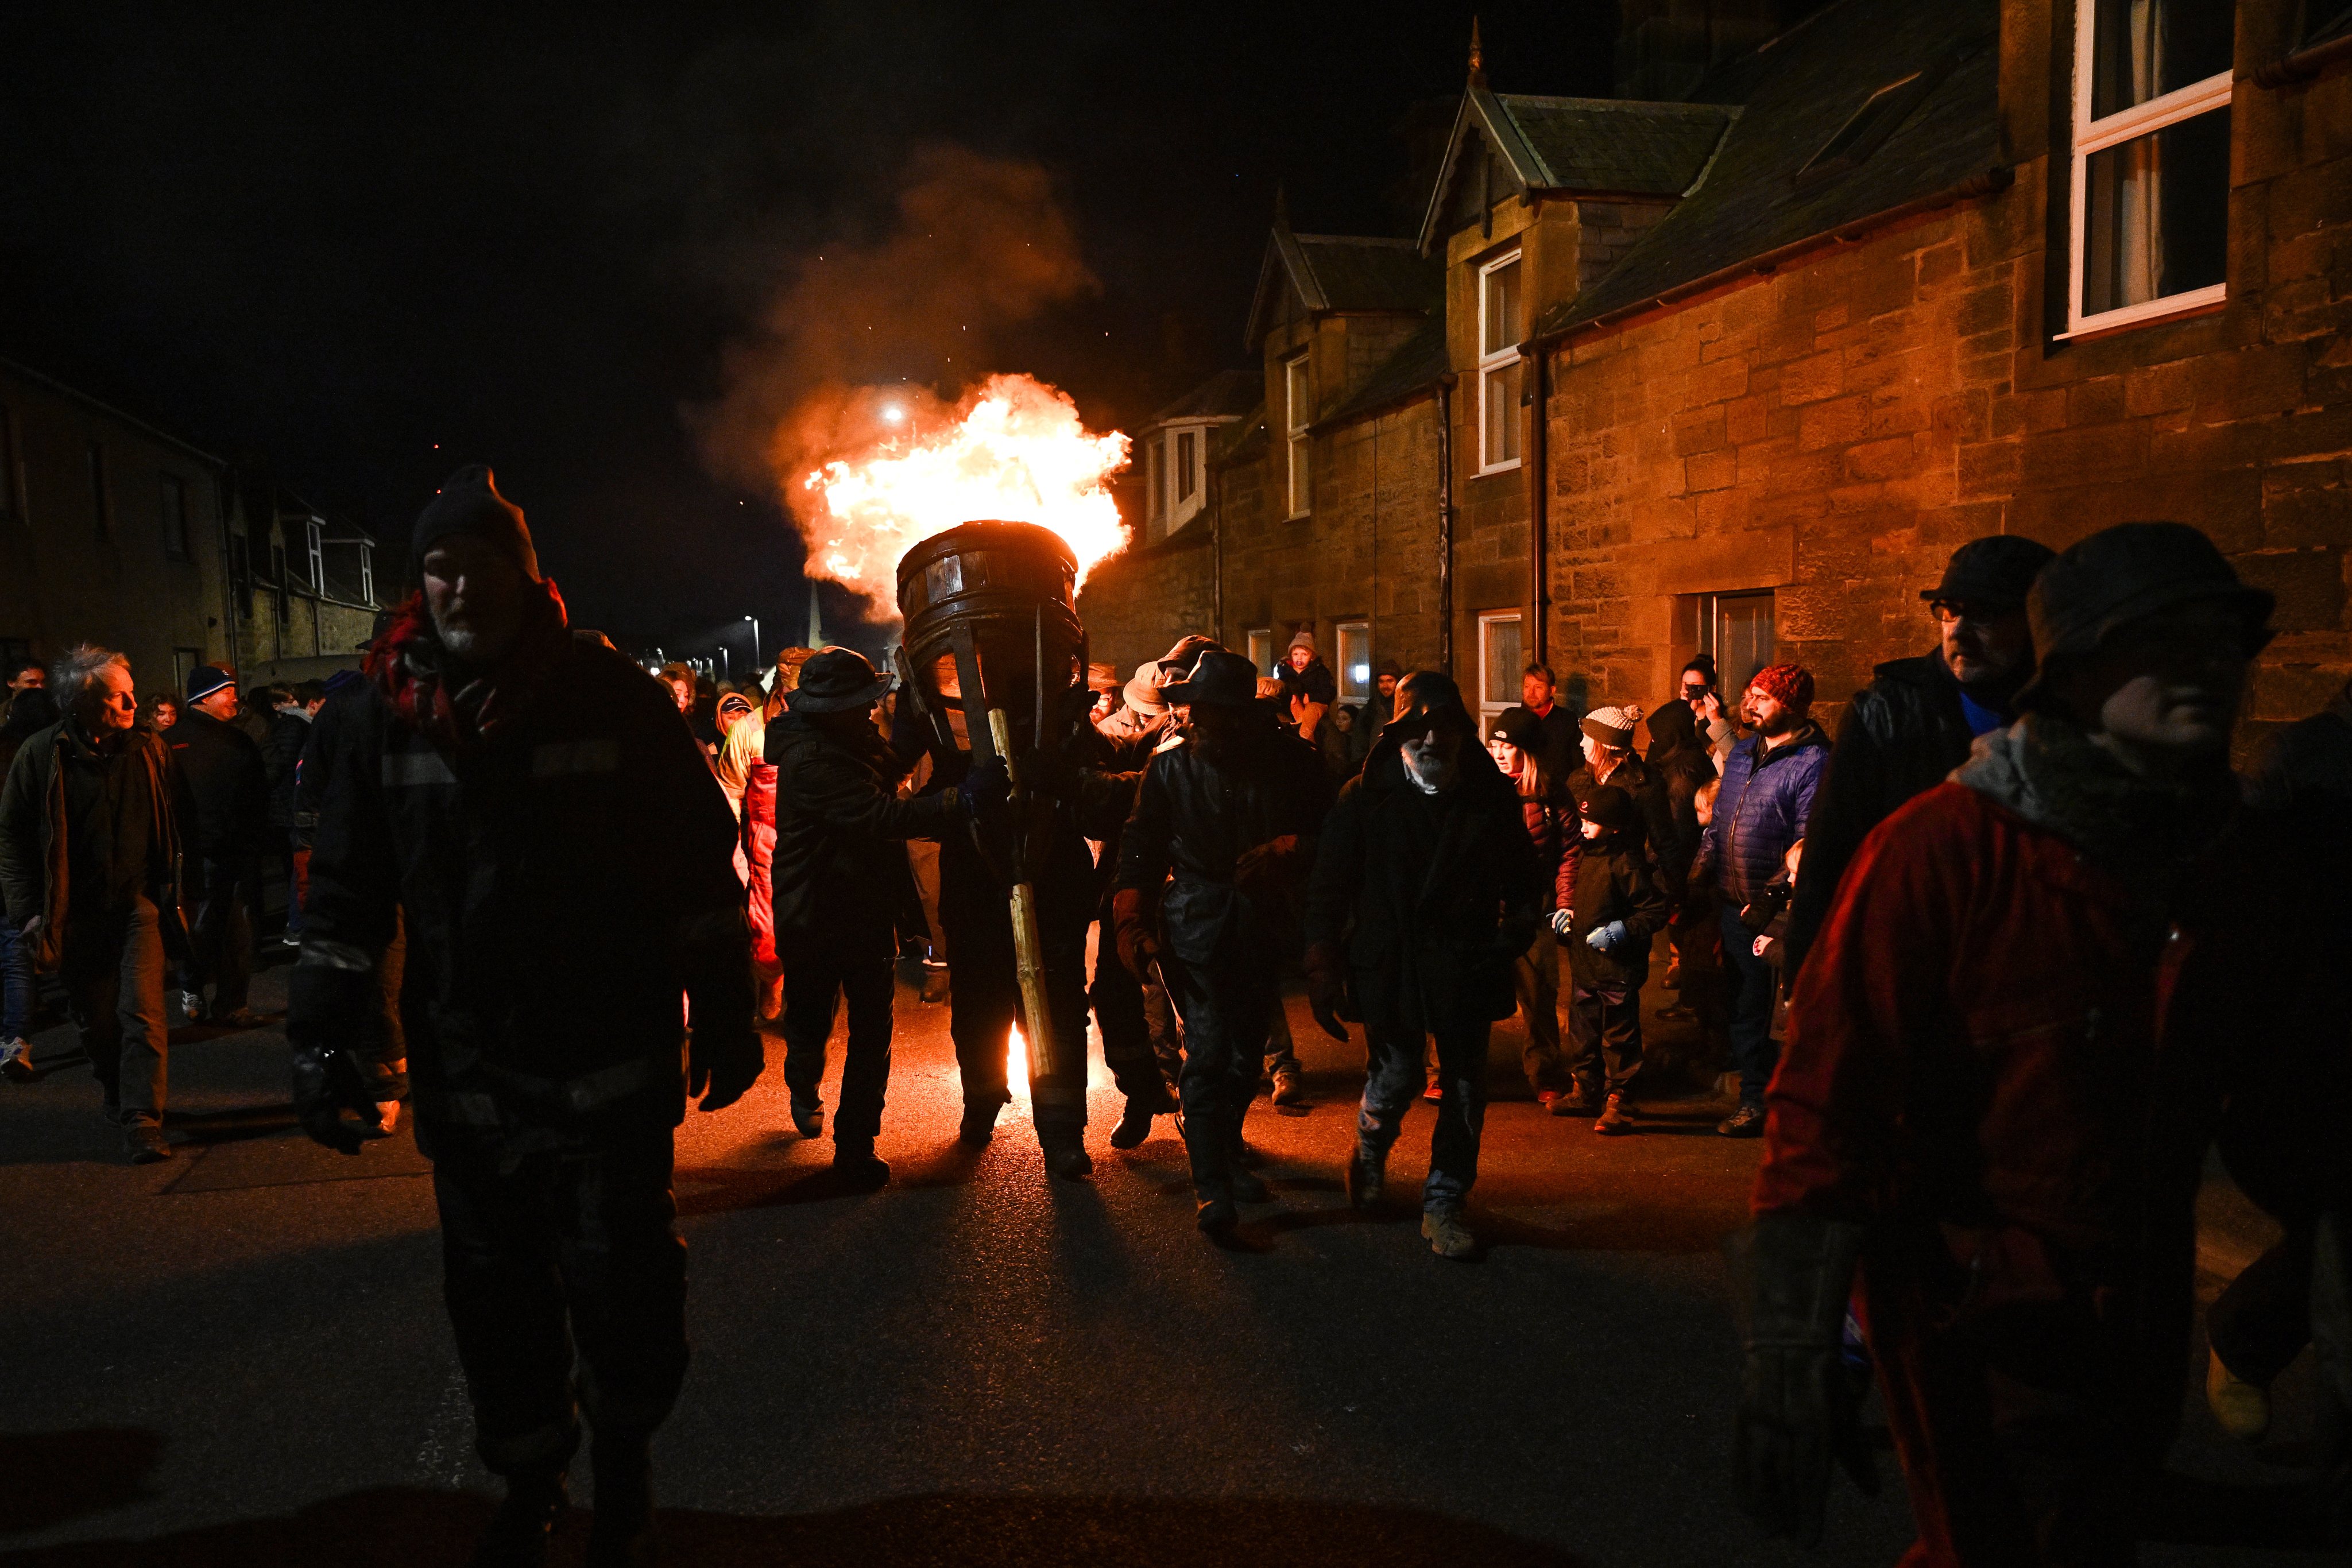 A queima do Clavie, um barril cheio de aparas de madeira e alcatrão, na Escócia, no dia 17. Este evento é geralmente celebrado no dia 11 de janeiro para marcar a entrada no ano novo.